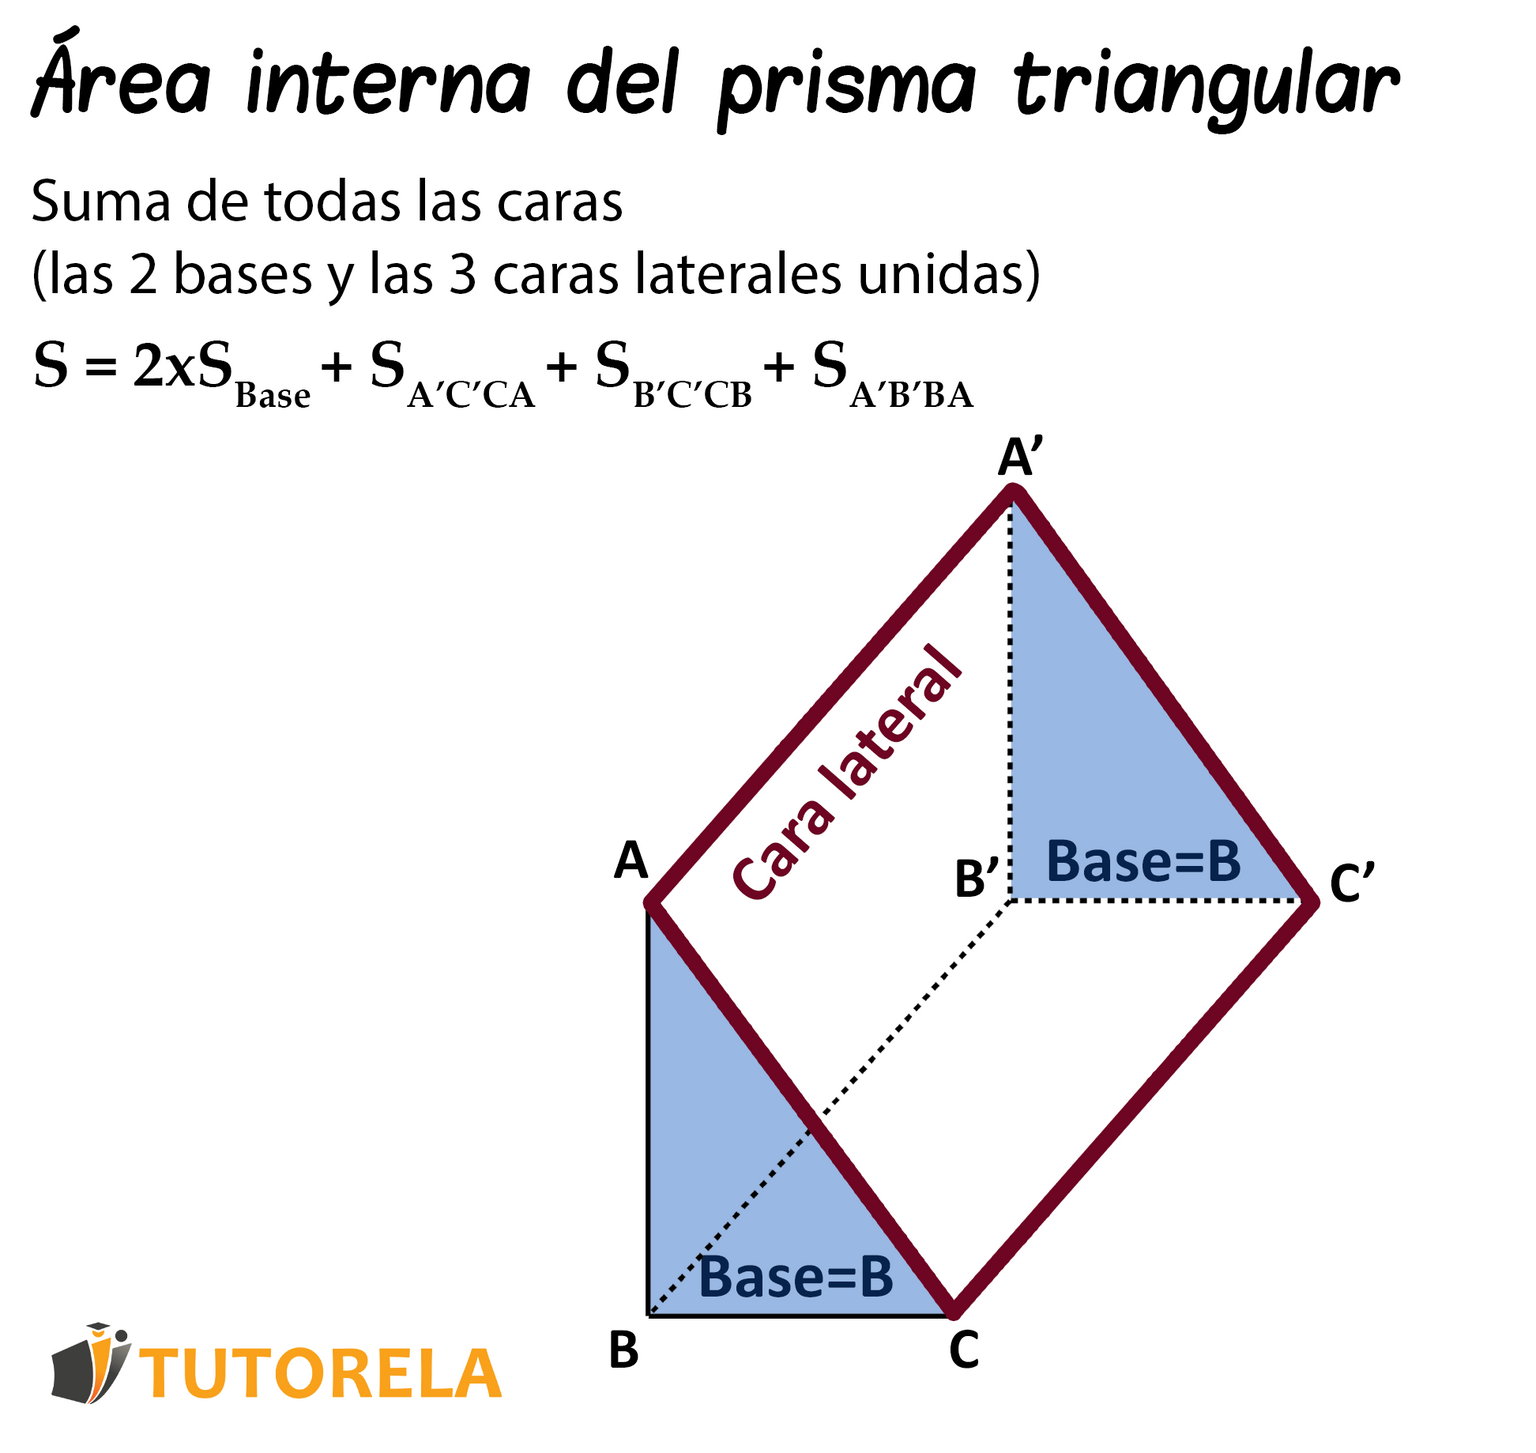 Fórmula para calcular el área de superficie de un prisma triangular recto